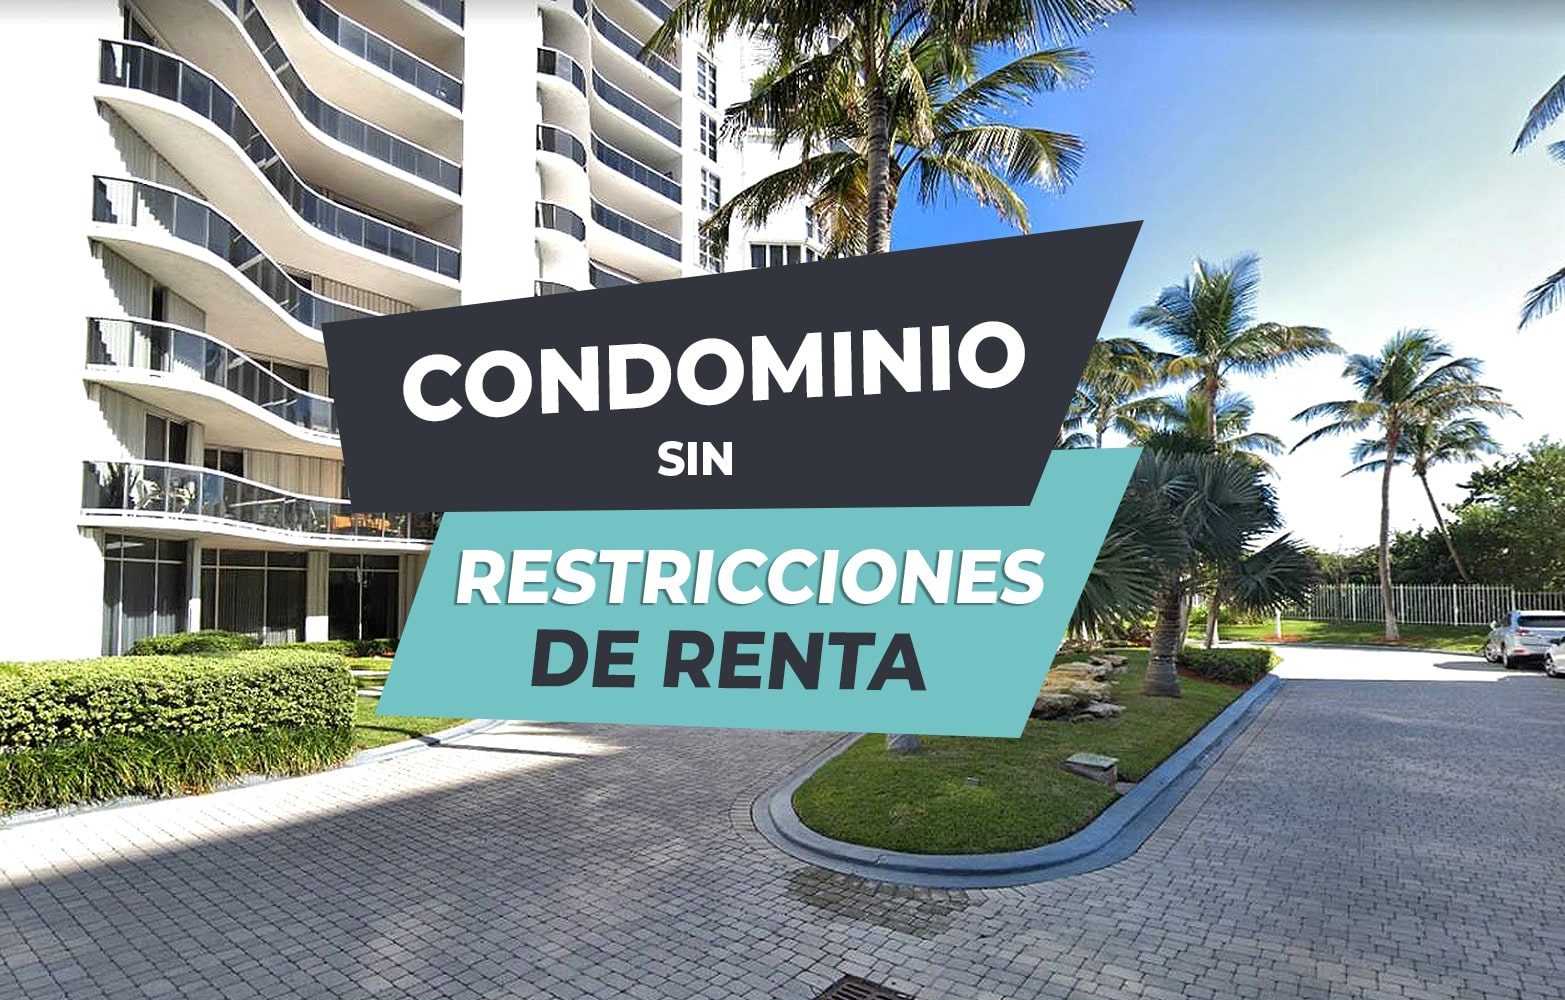 Condominios sin restricciones de renta